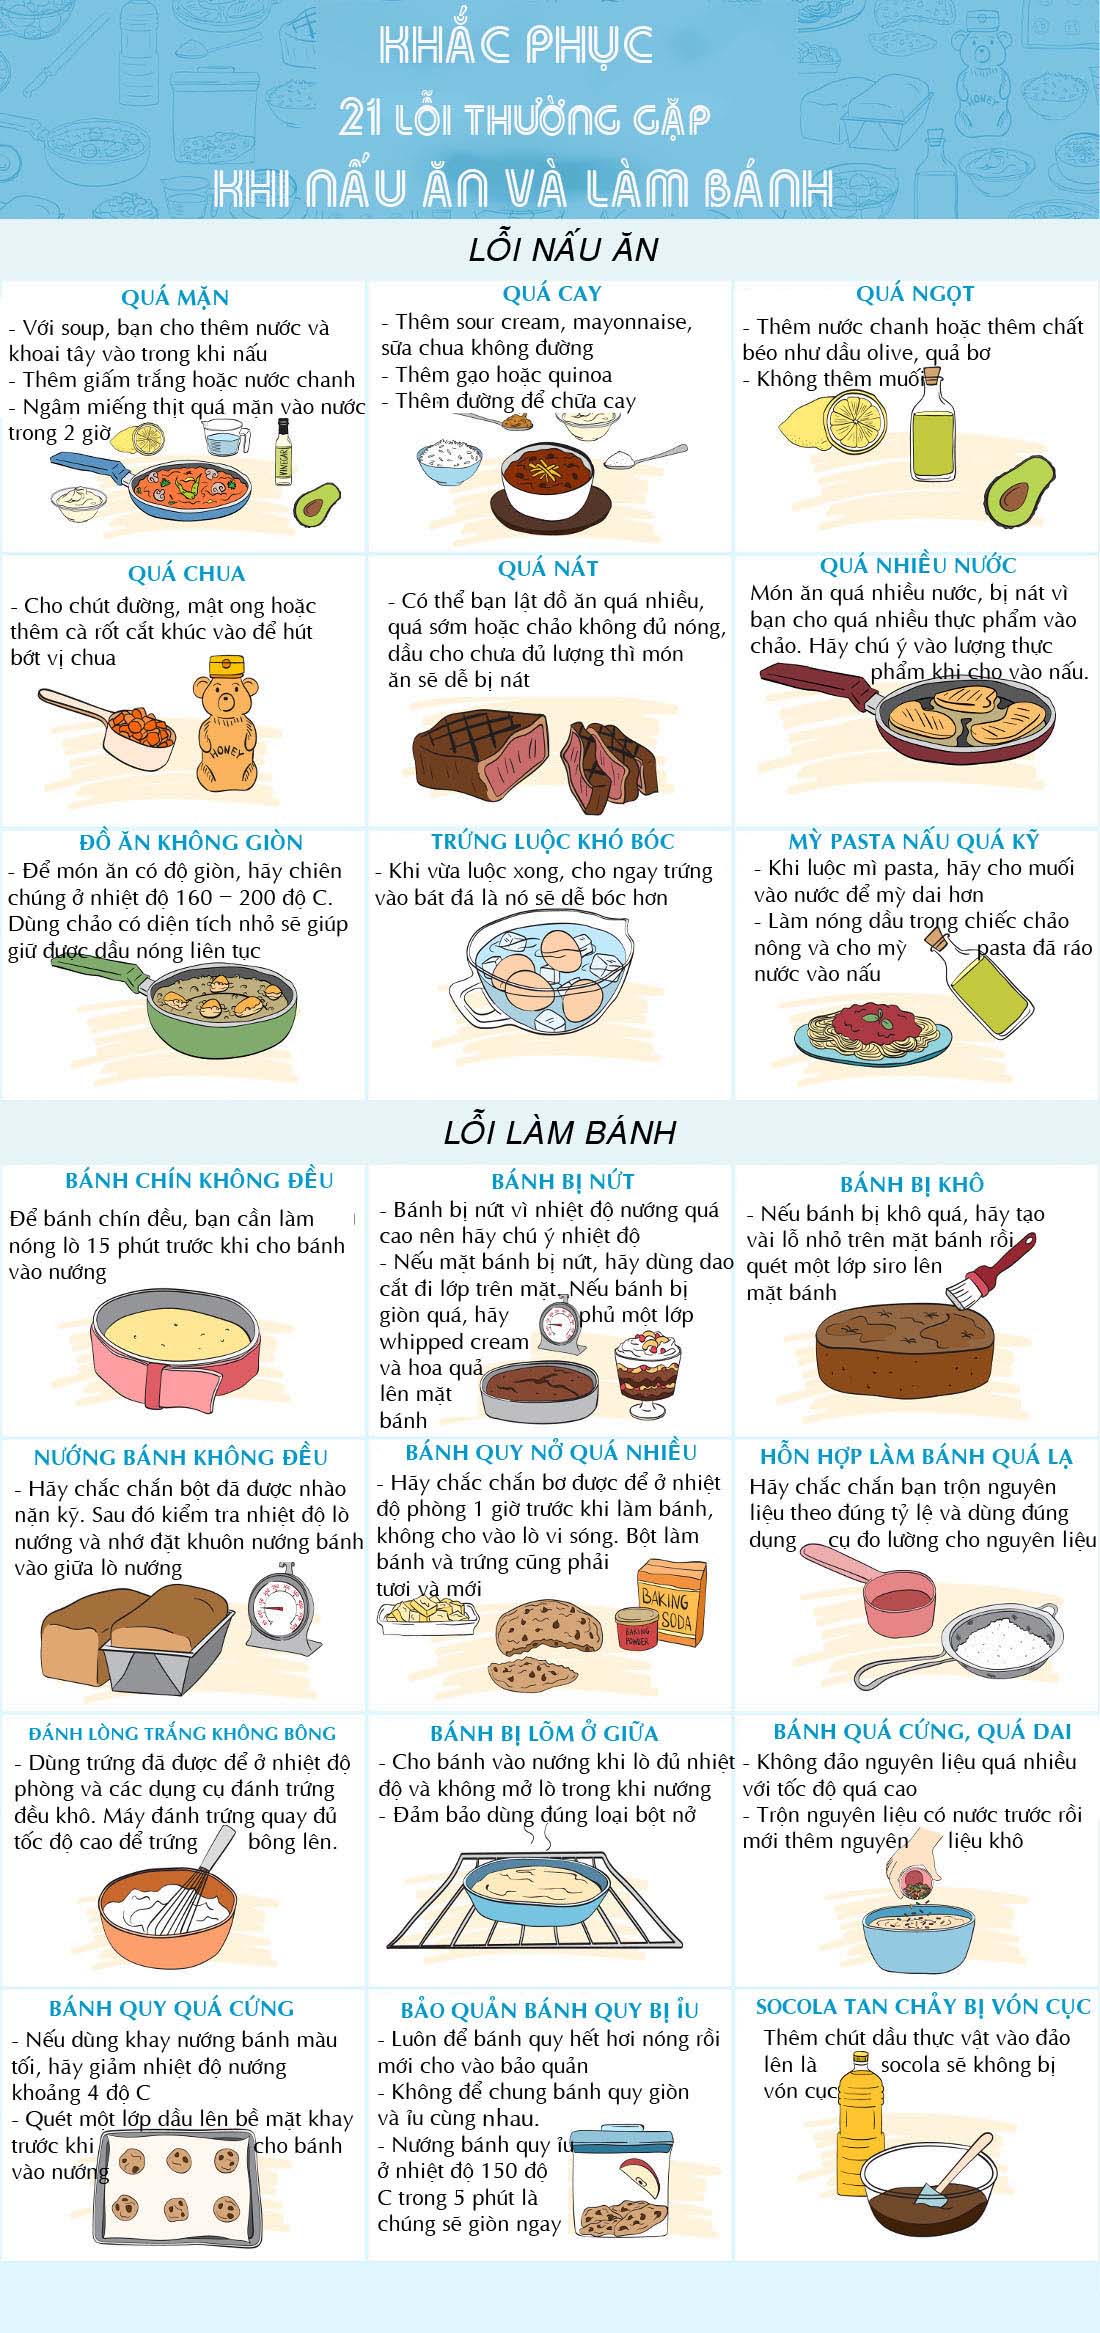 21 cách “chữa cháy” những lỗi sai phổ biến khi nấu ăn - 1